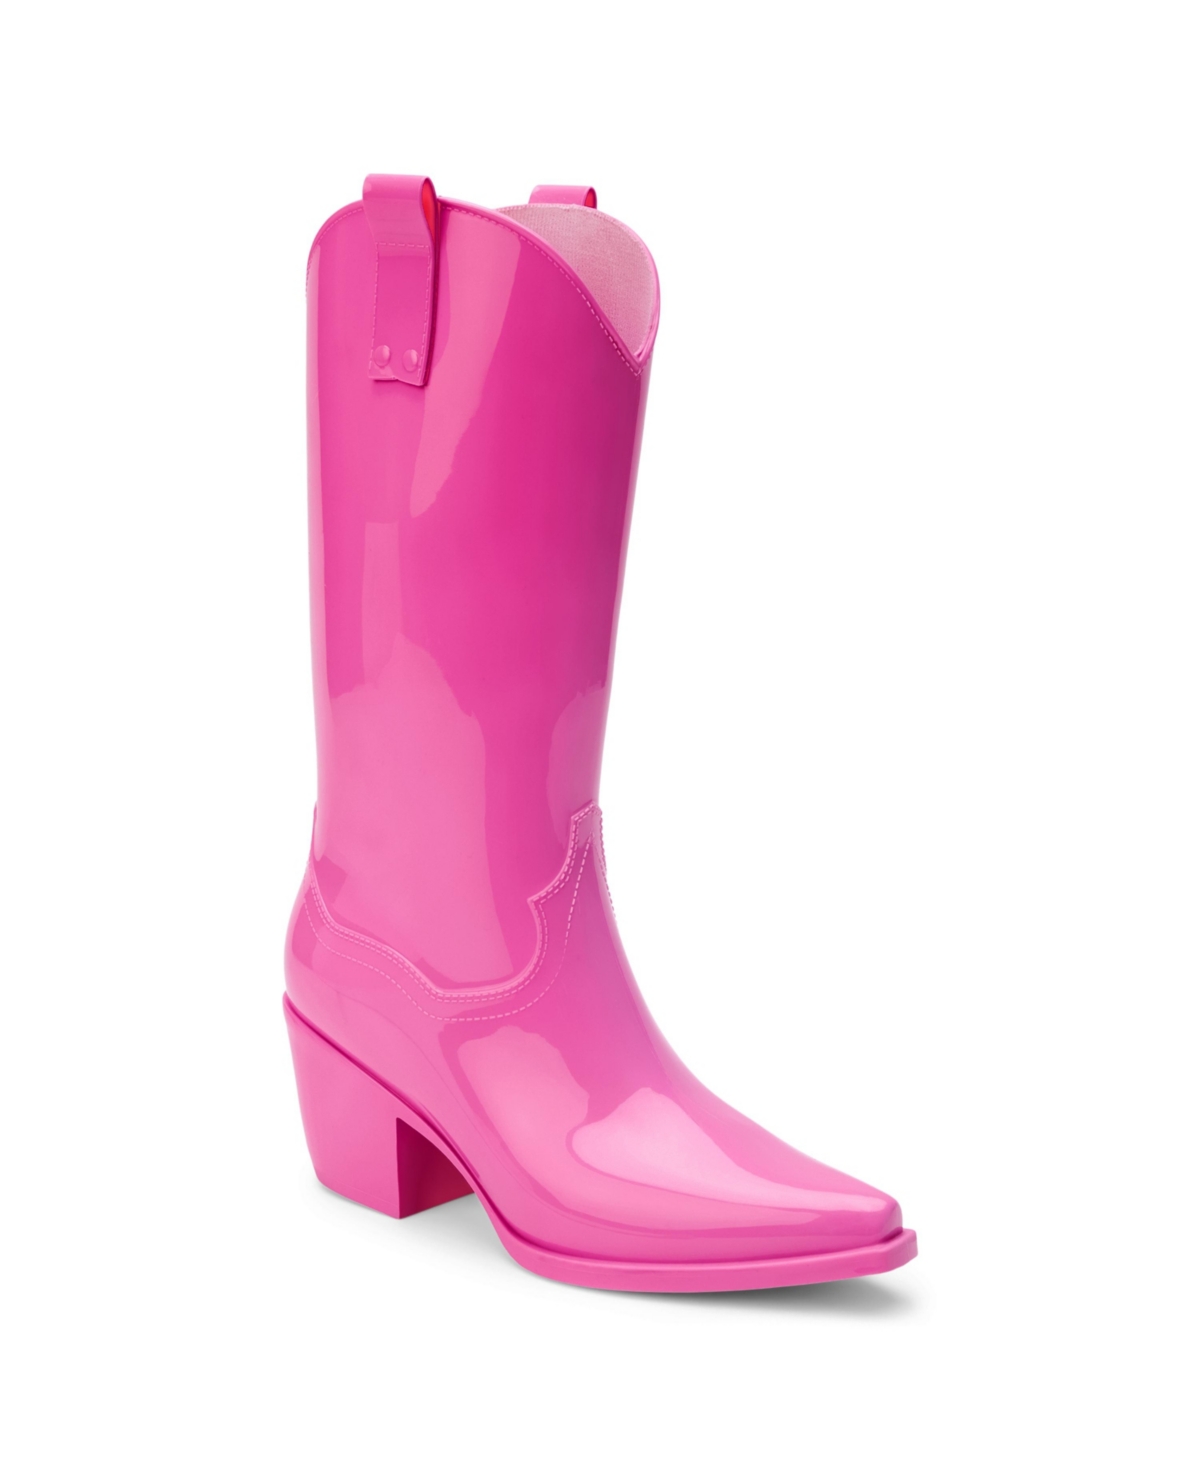 Annie Women's Boots - Pink